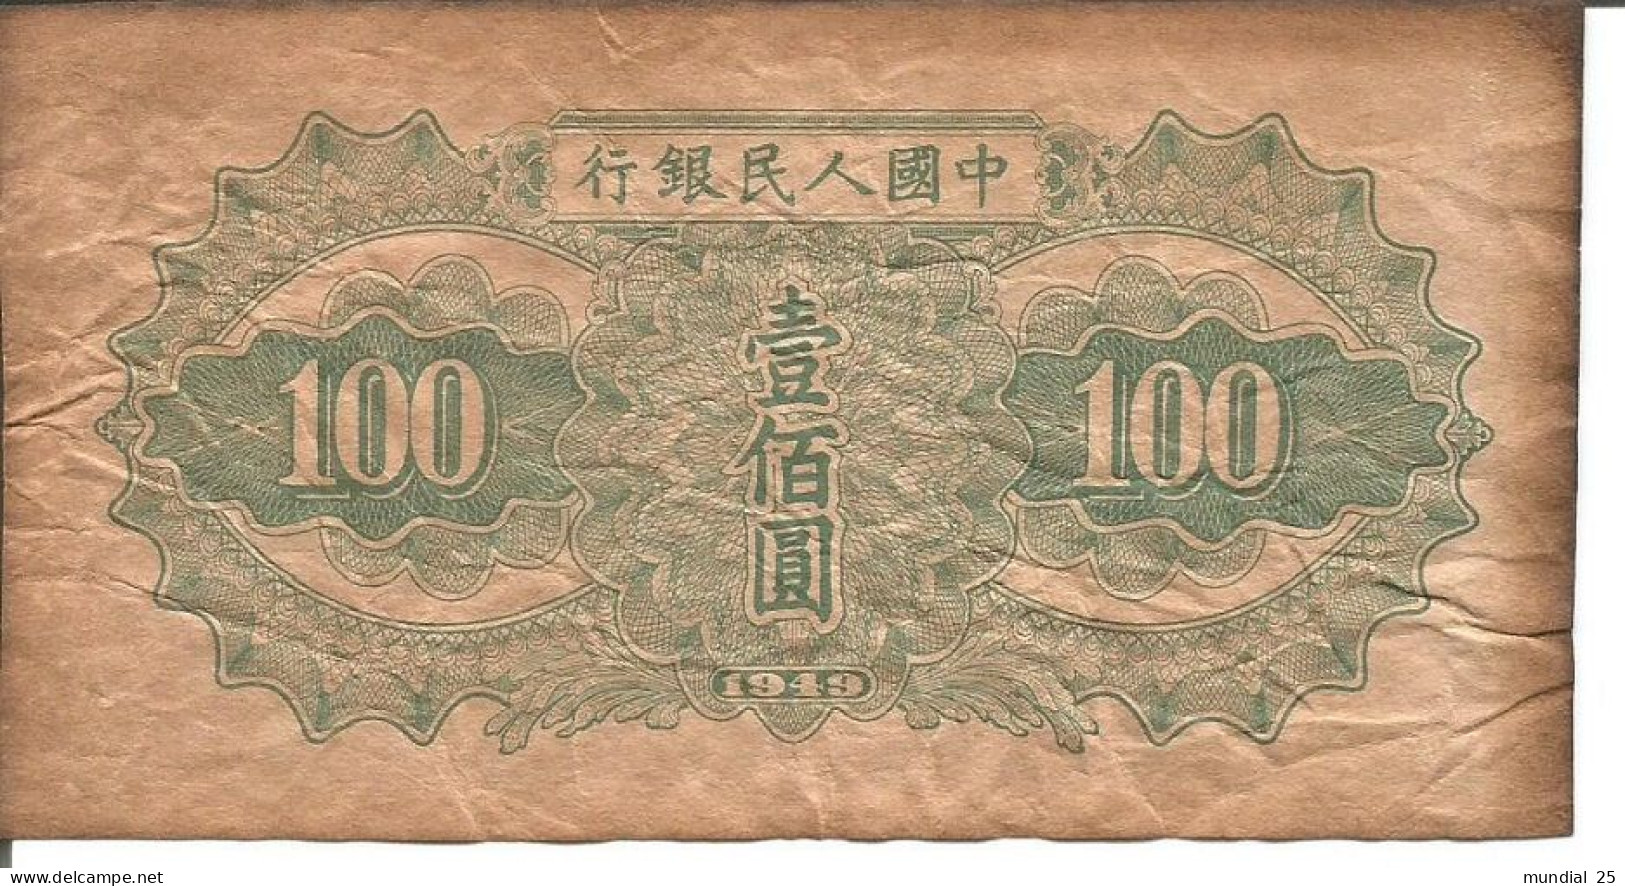 CHINA 100 YUAN 1949 - REPRINT NOTE - Chine